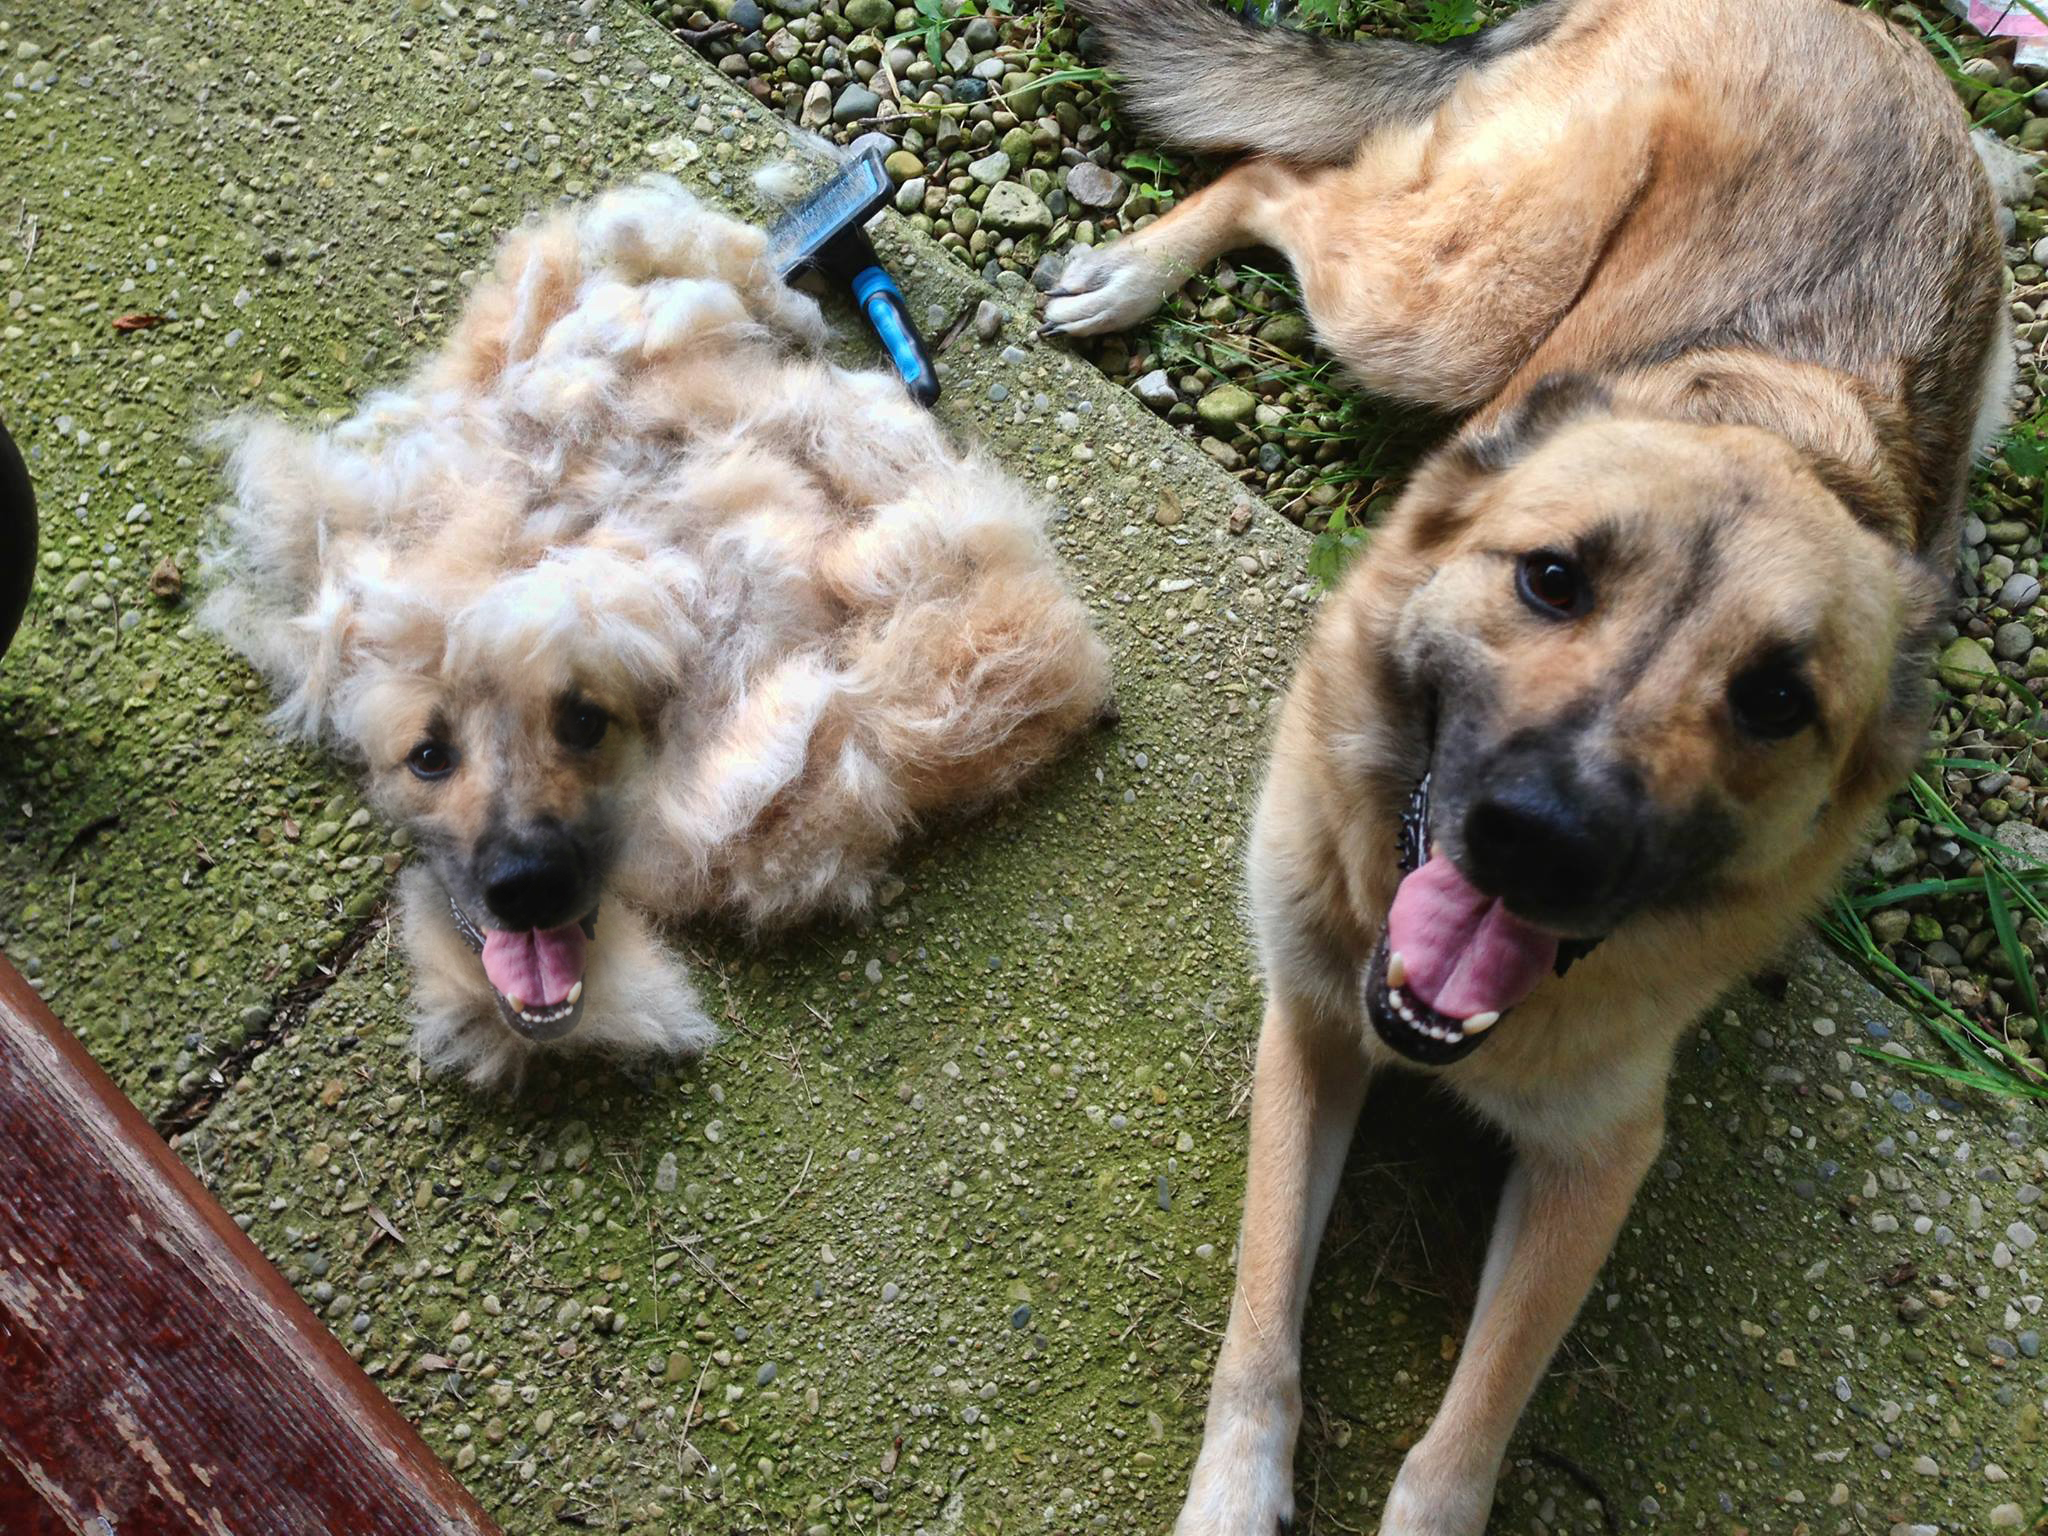 DOG after brushing hair